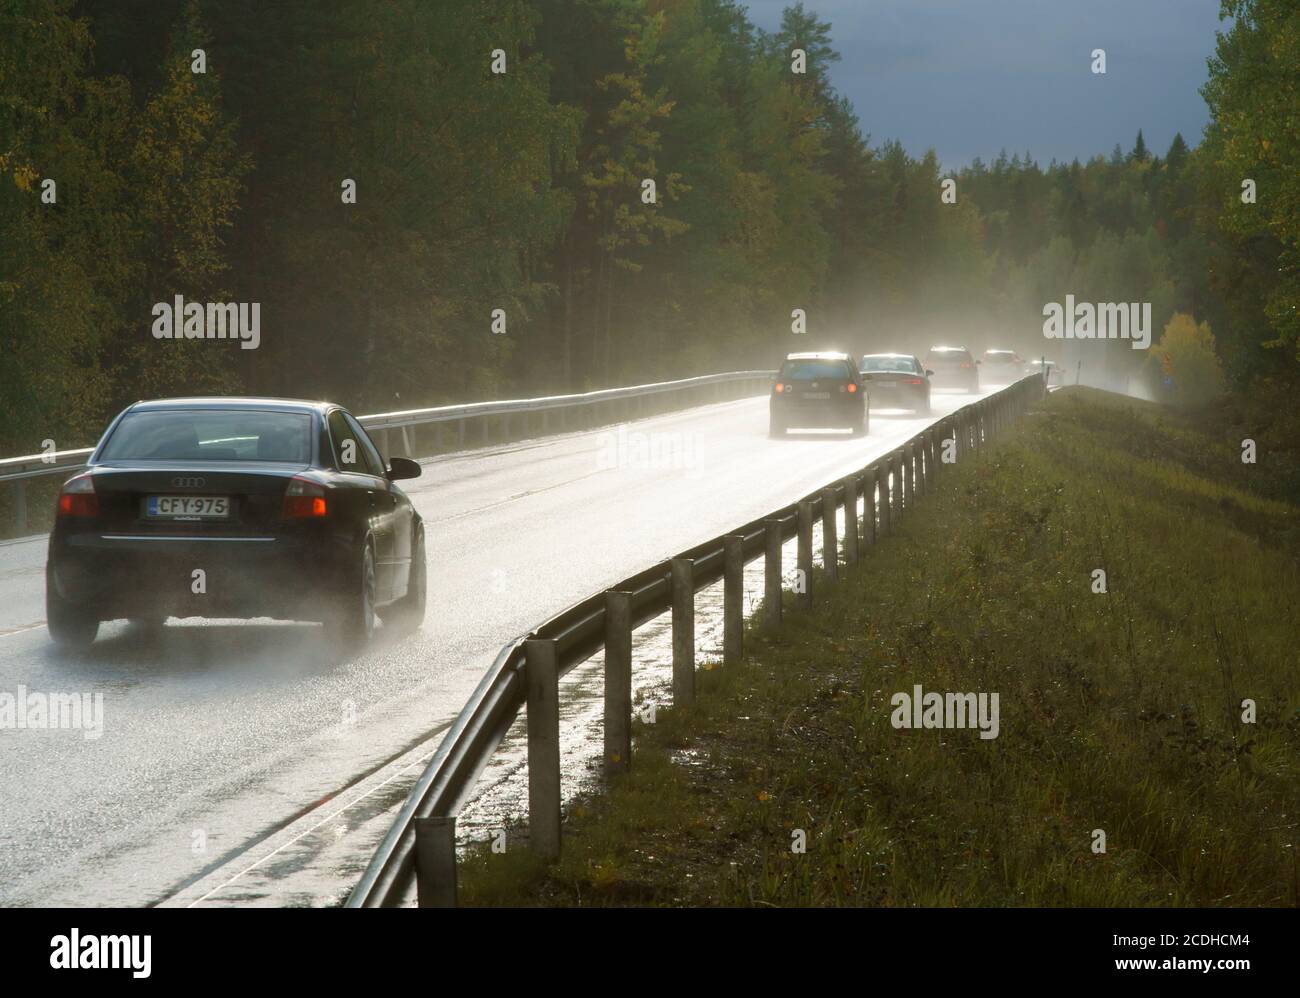 Voitures roulant sur l'autoroute humide 9 ( ' ysitie ') par un jour pluvieux à été , Finlande Banque D'Images